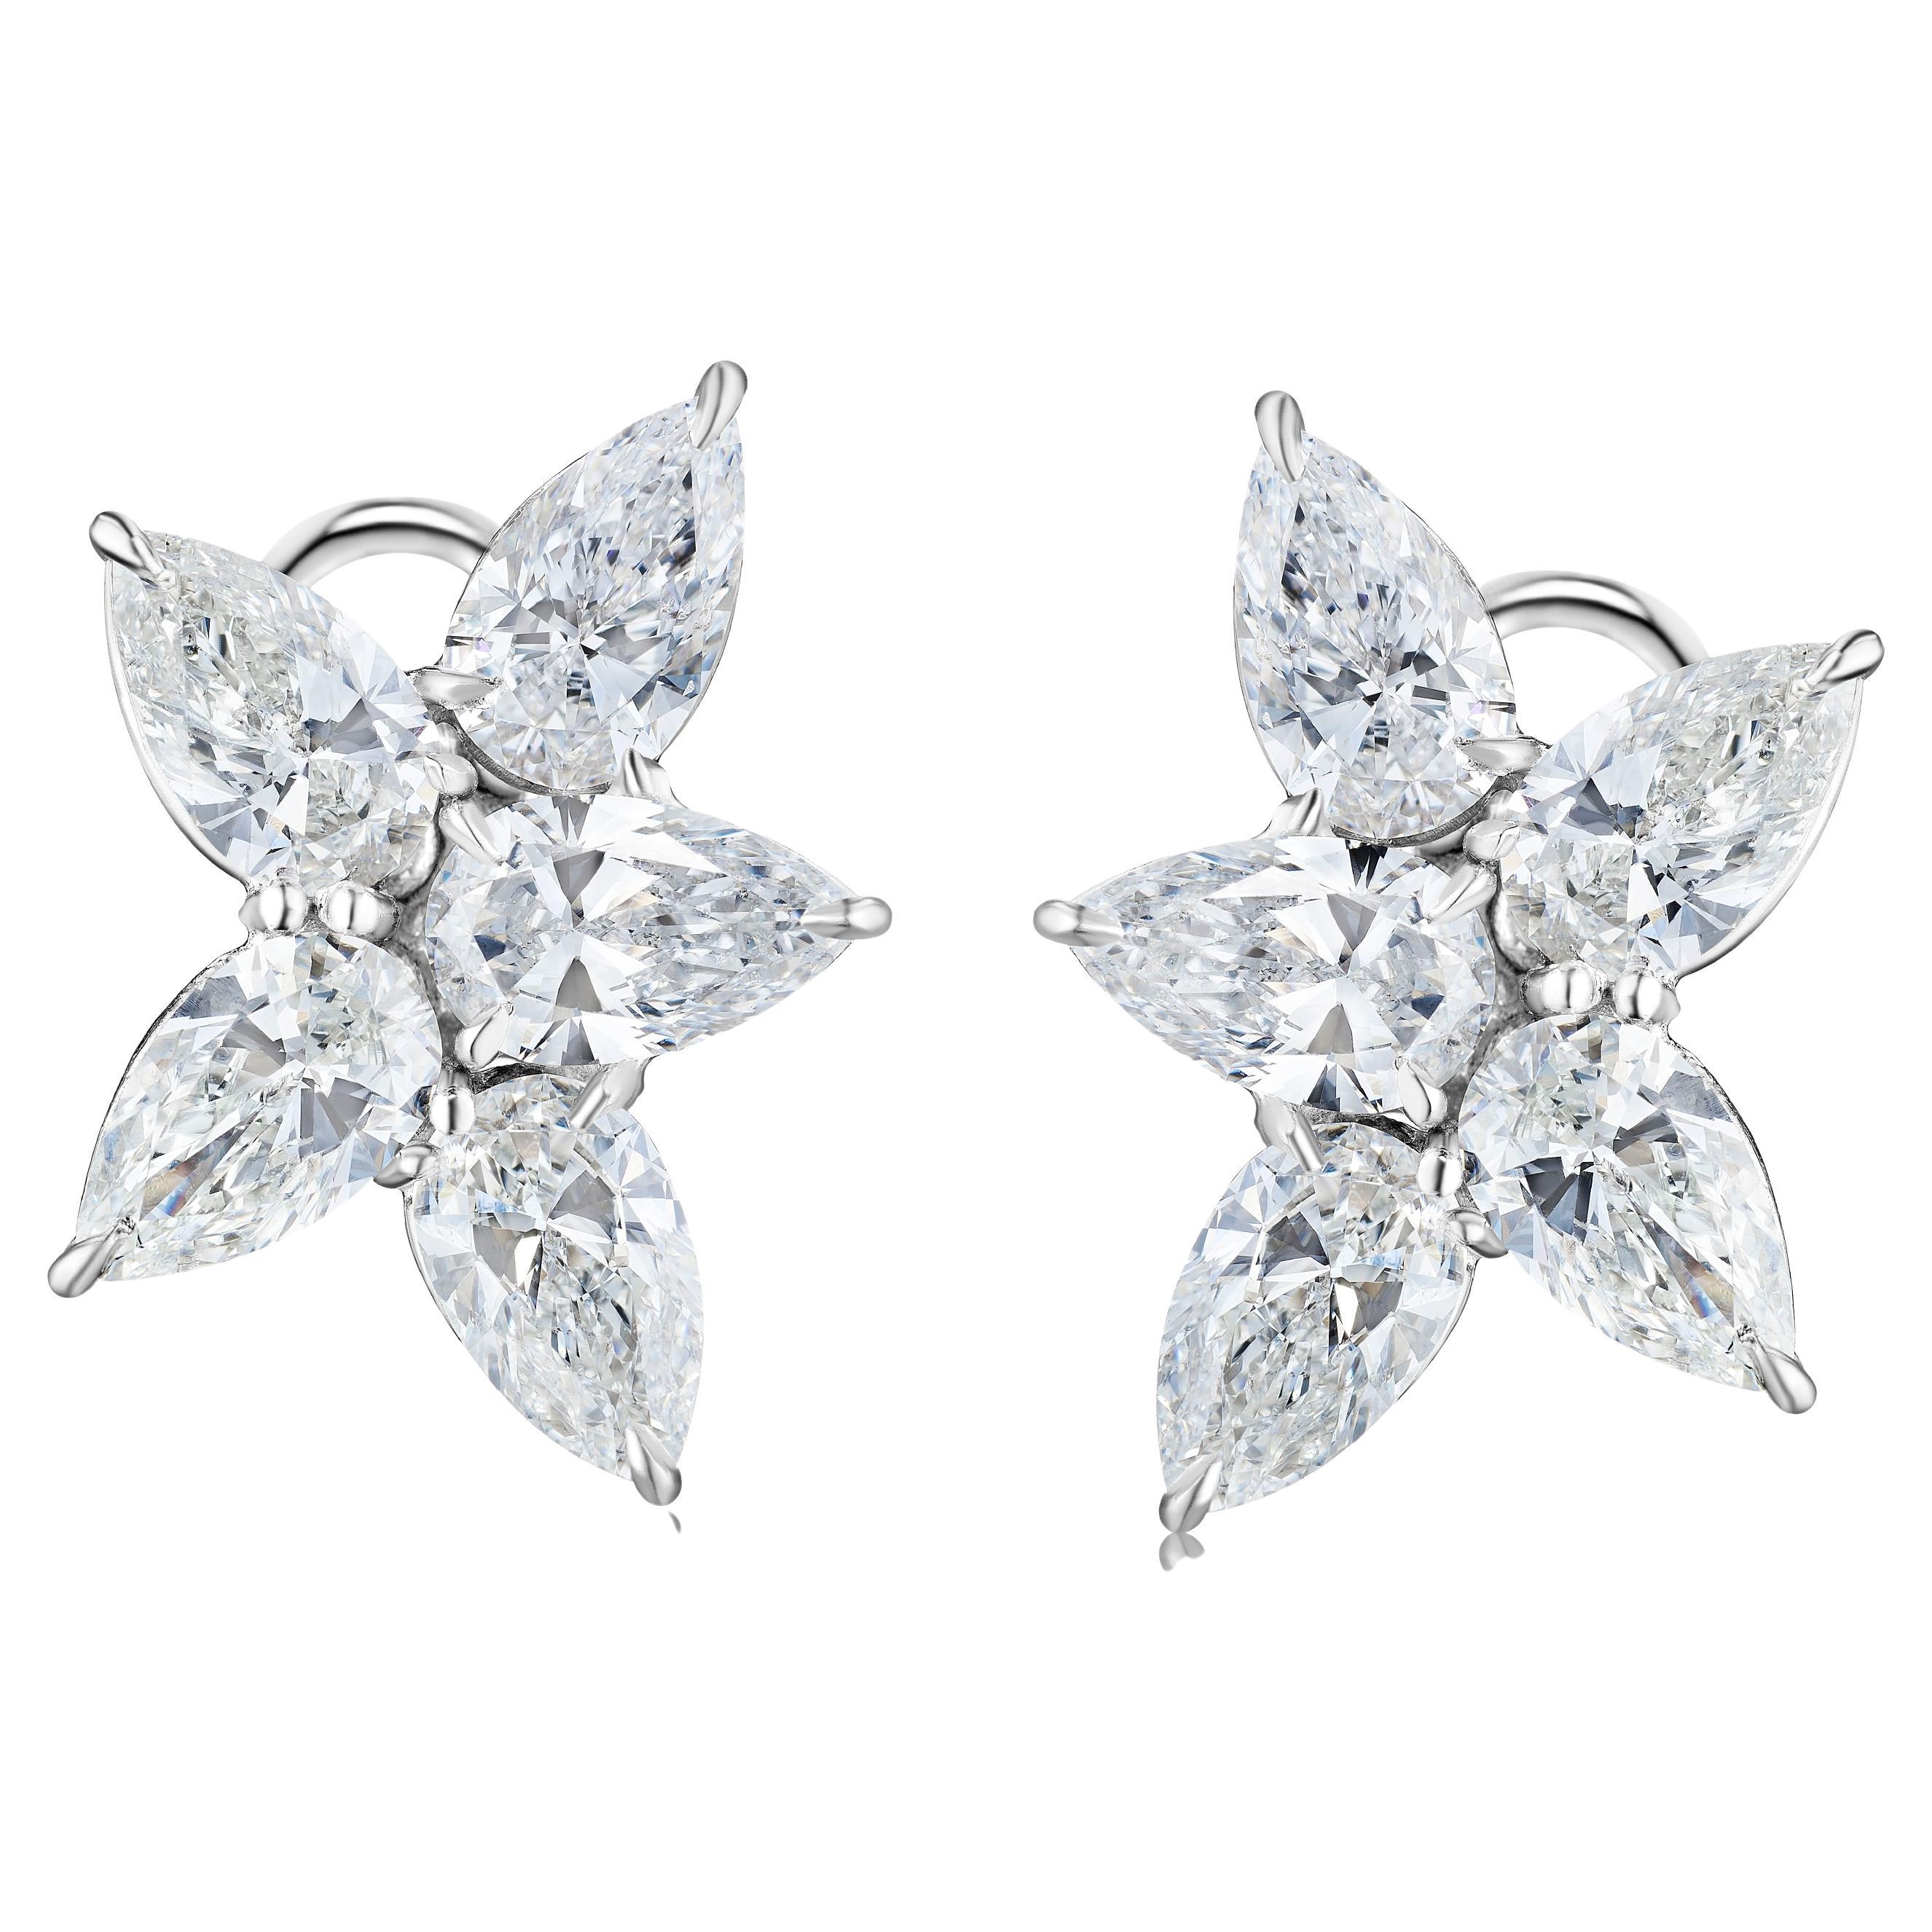 GIA Certified 5.01 Carat Pear Shape Diamond Cluster Earring